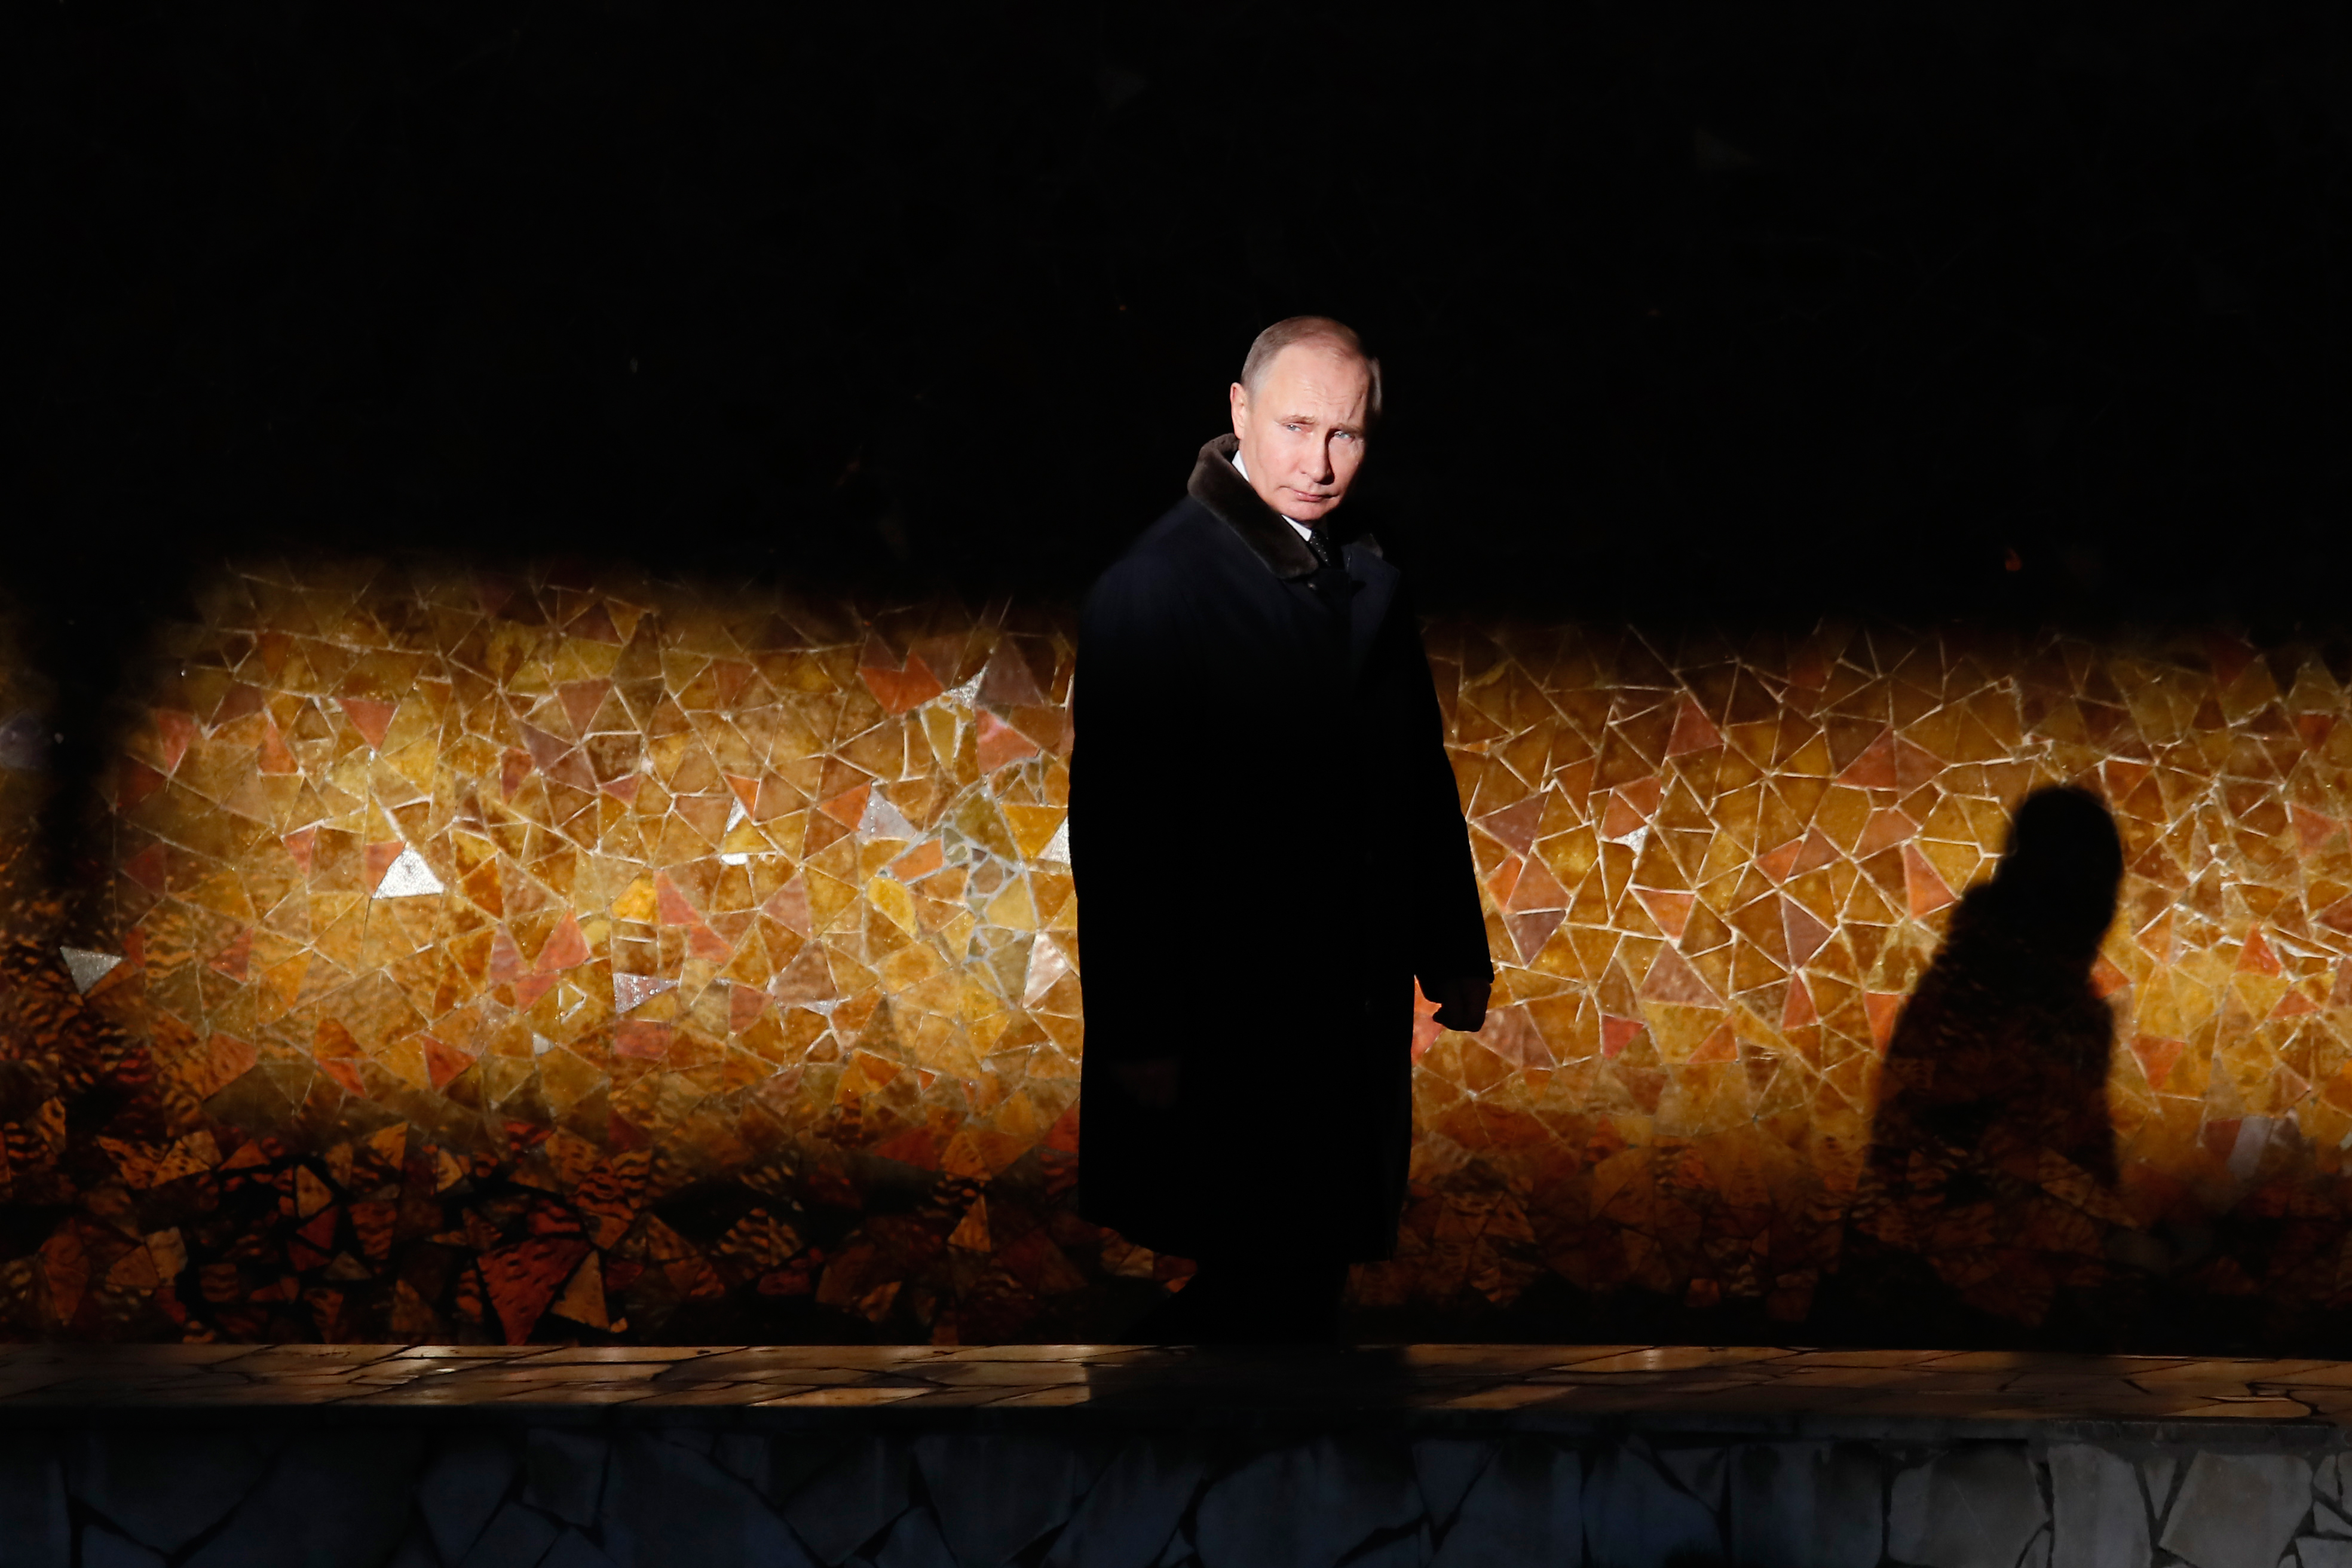 Eldőlt: Putyin tényleg elindul a választáson!!444!!!